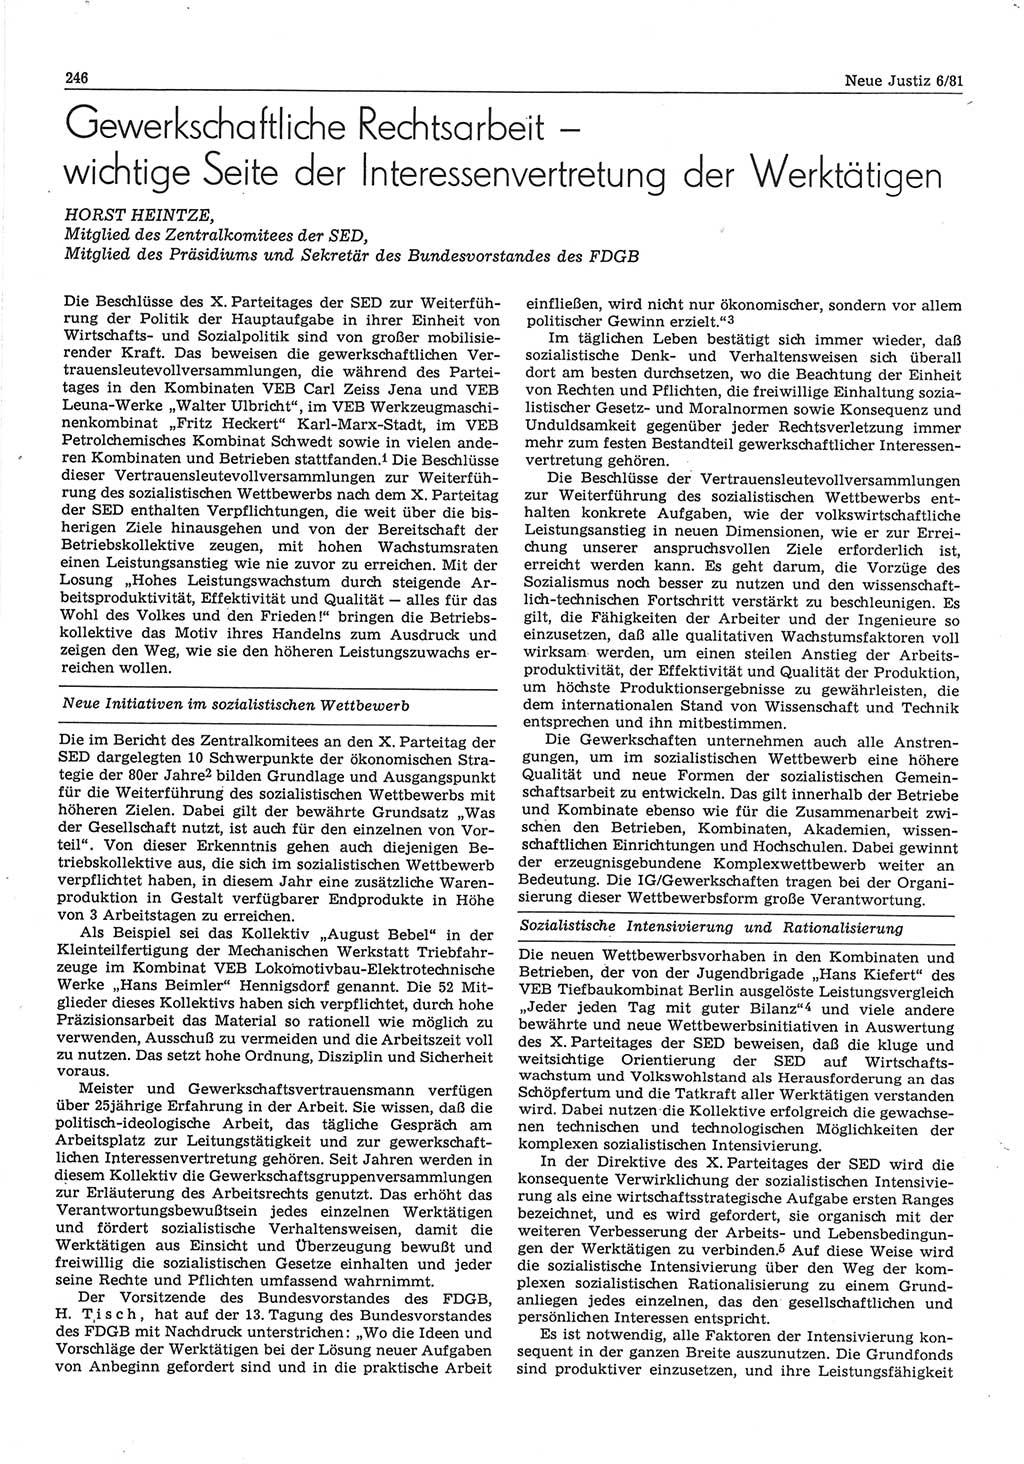 Neue Justiz (NJ), Zeitschrift für sozialistisches Recht und Gesetzlichkeit [Deutsche Demokratische Republik (DDR)], 35. Jahrgang 1981, Seite 246 (NJ DDR 1981, S. 246)